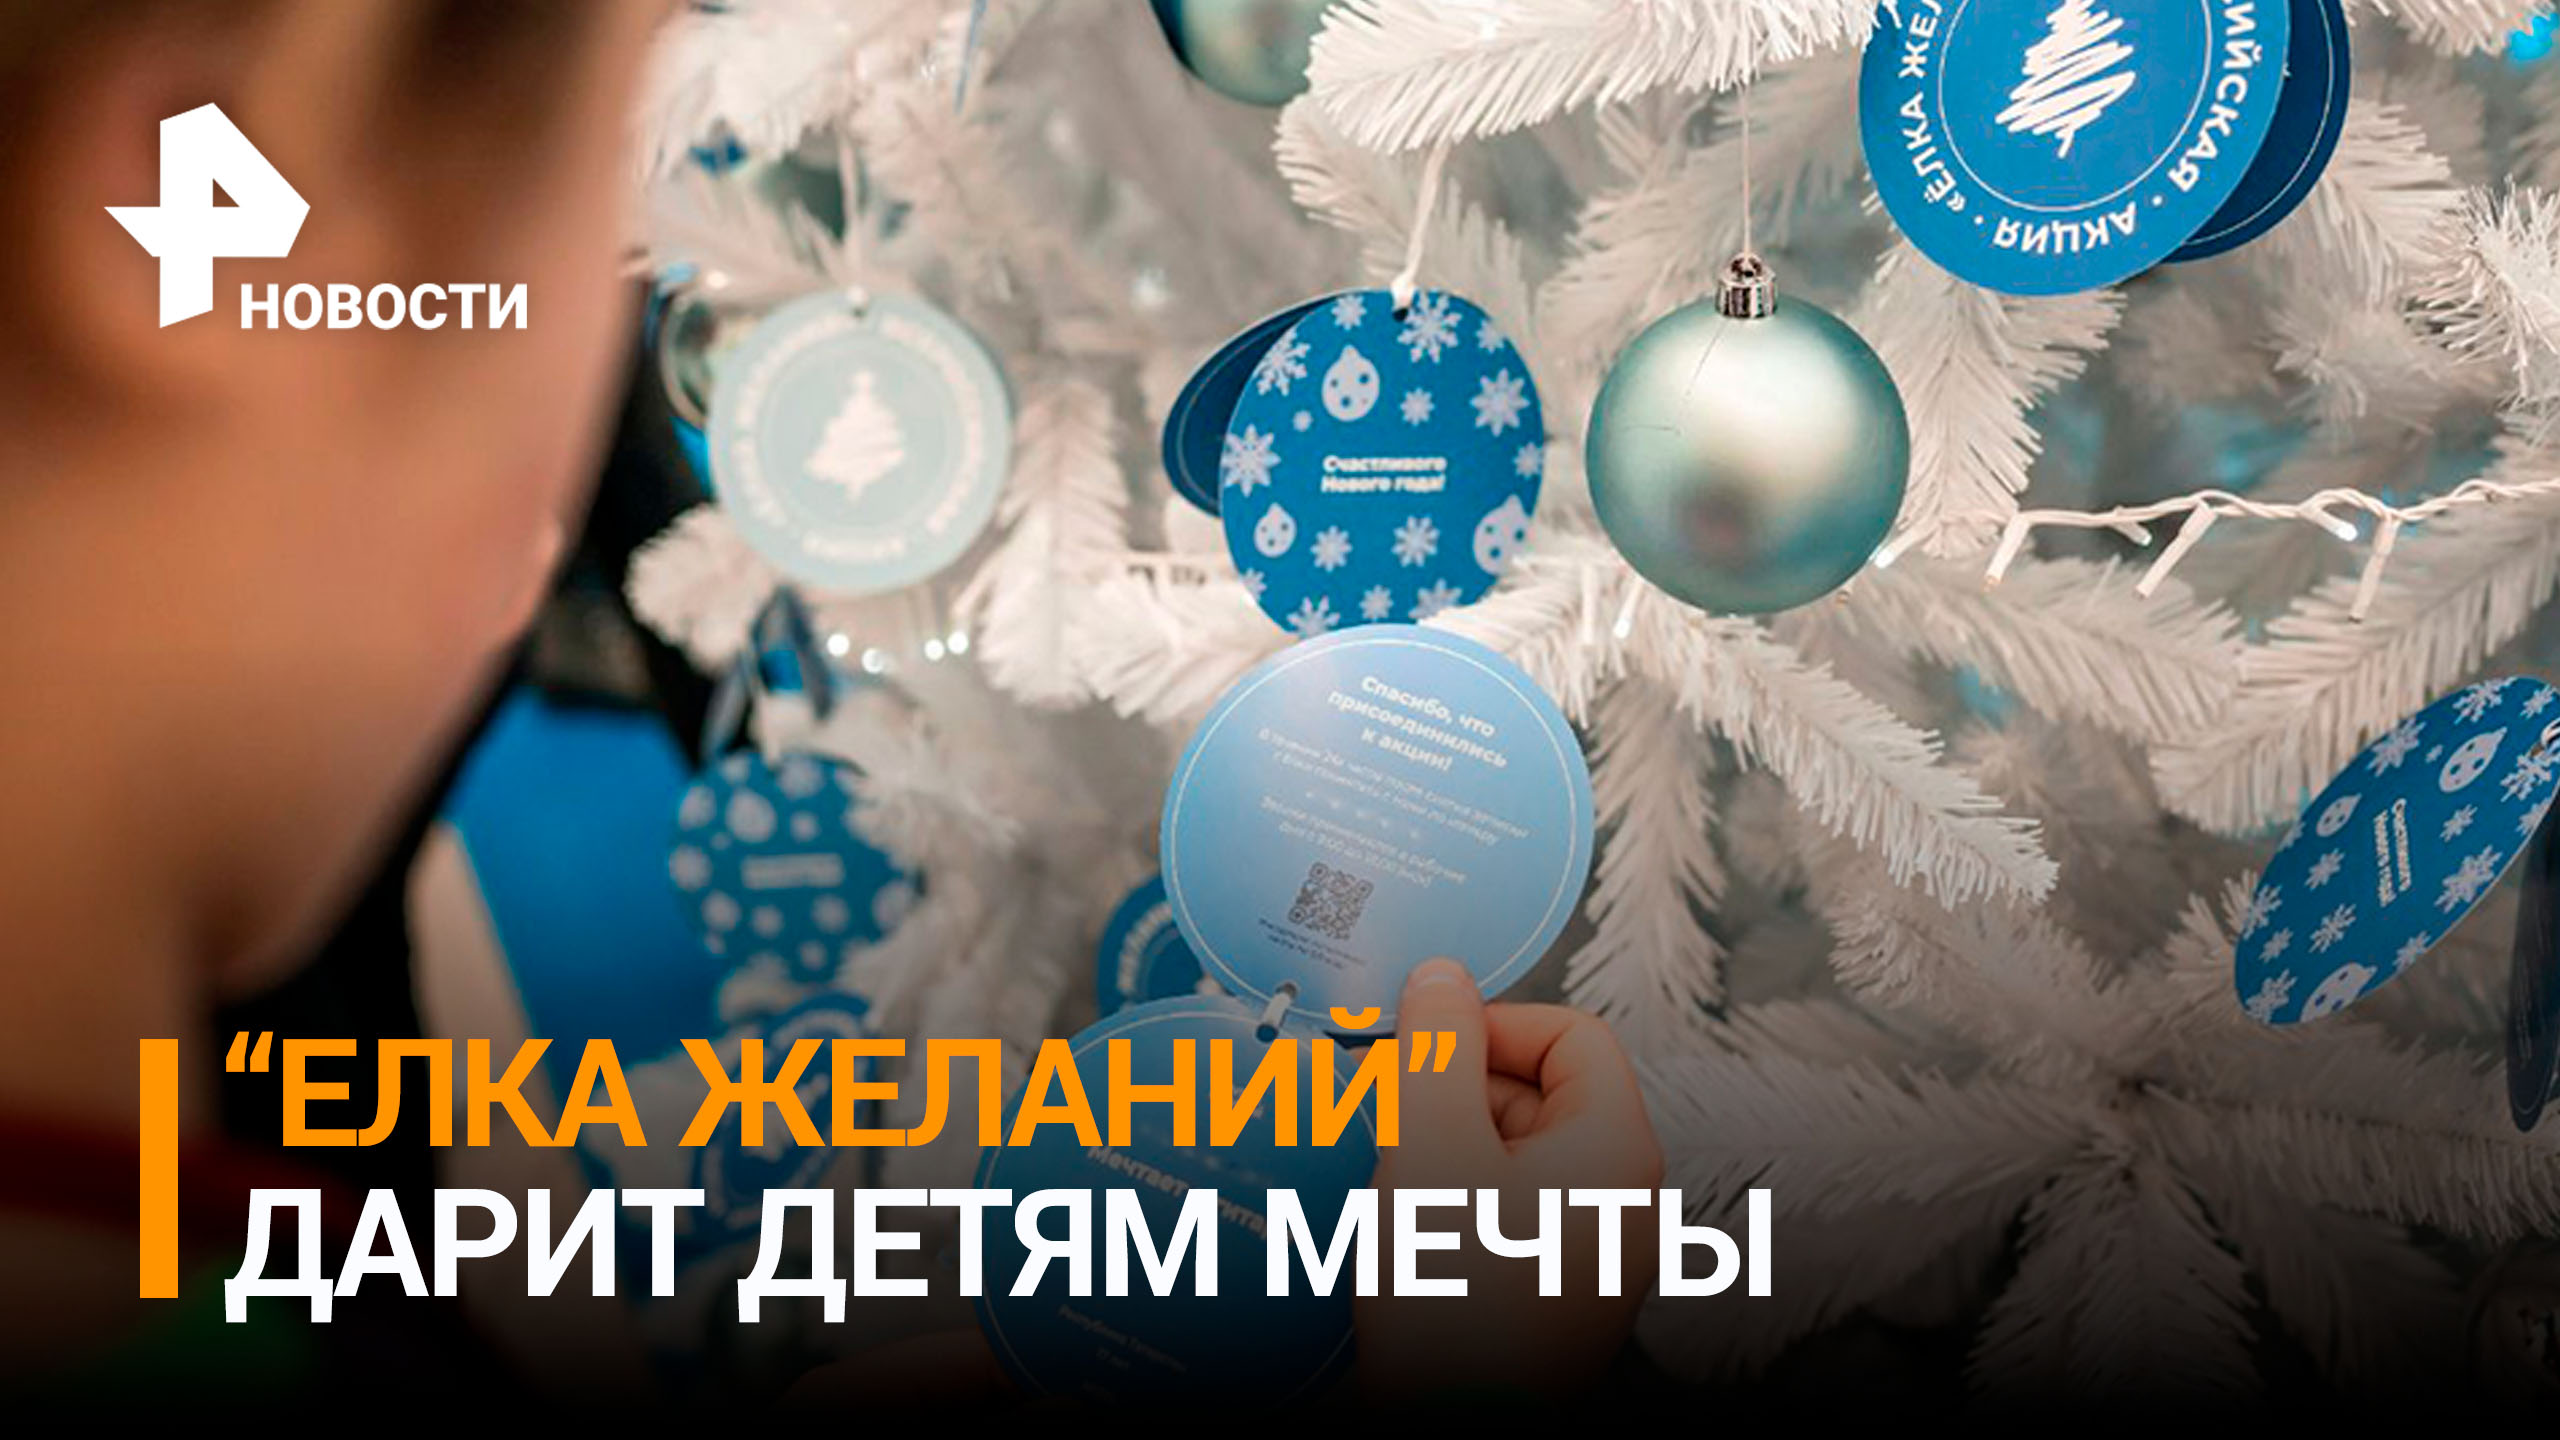 Новогоднее волшебство: как акция "Елка желаний" исполняет мечты детей / РЕН Новости